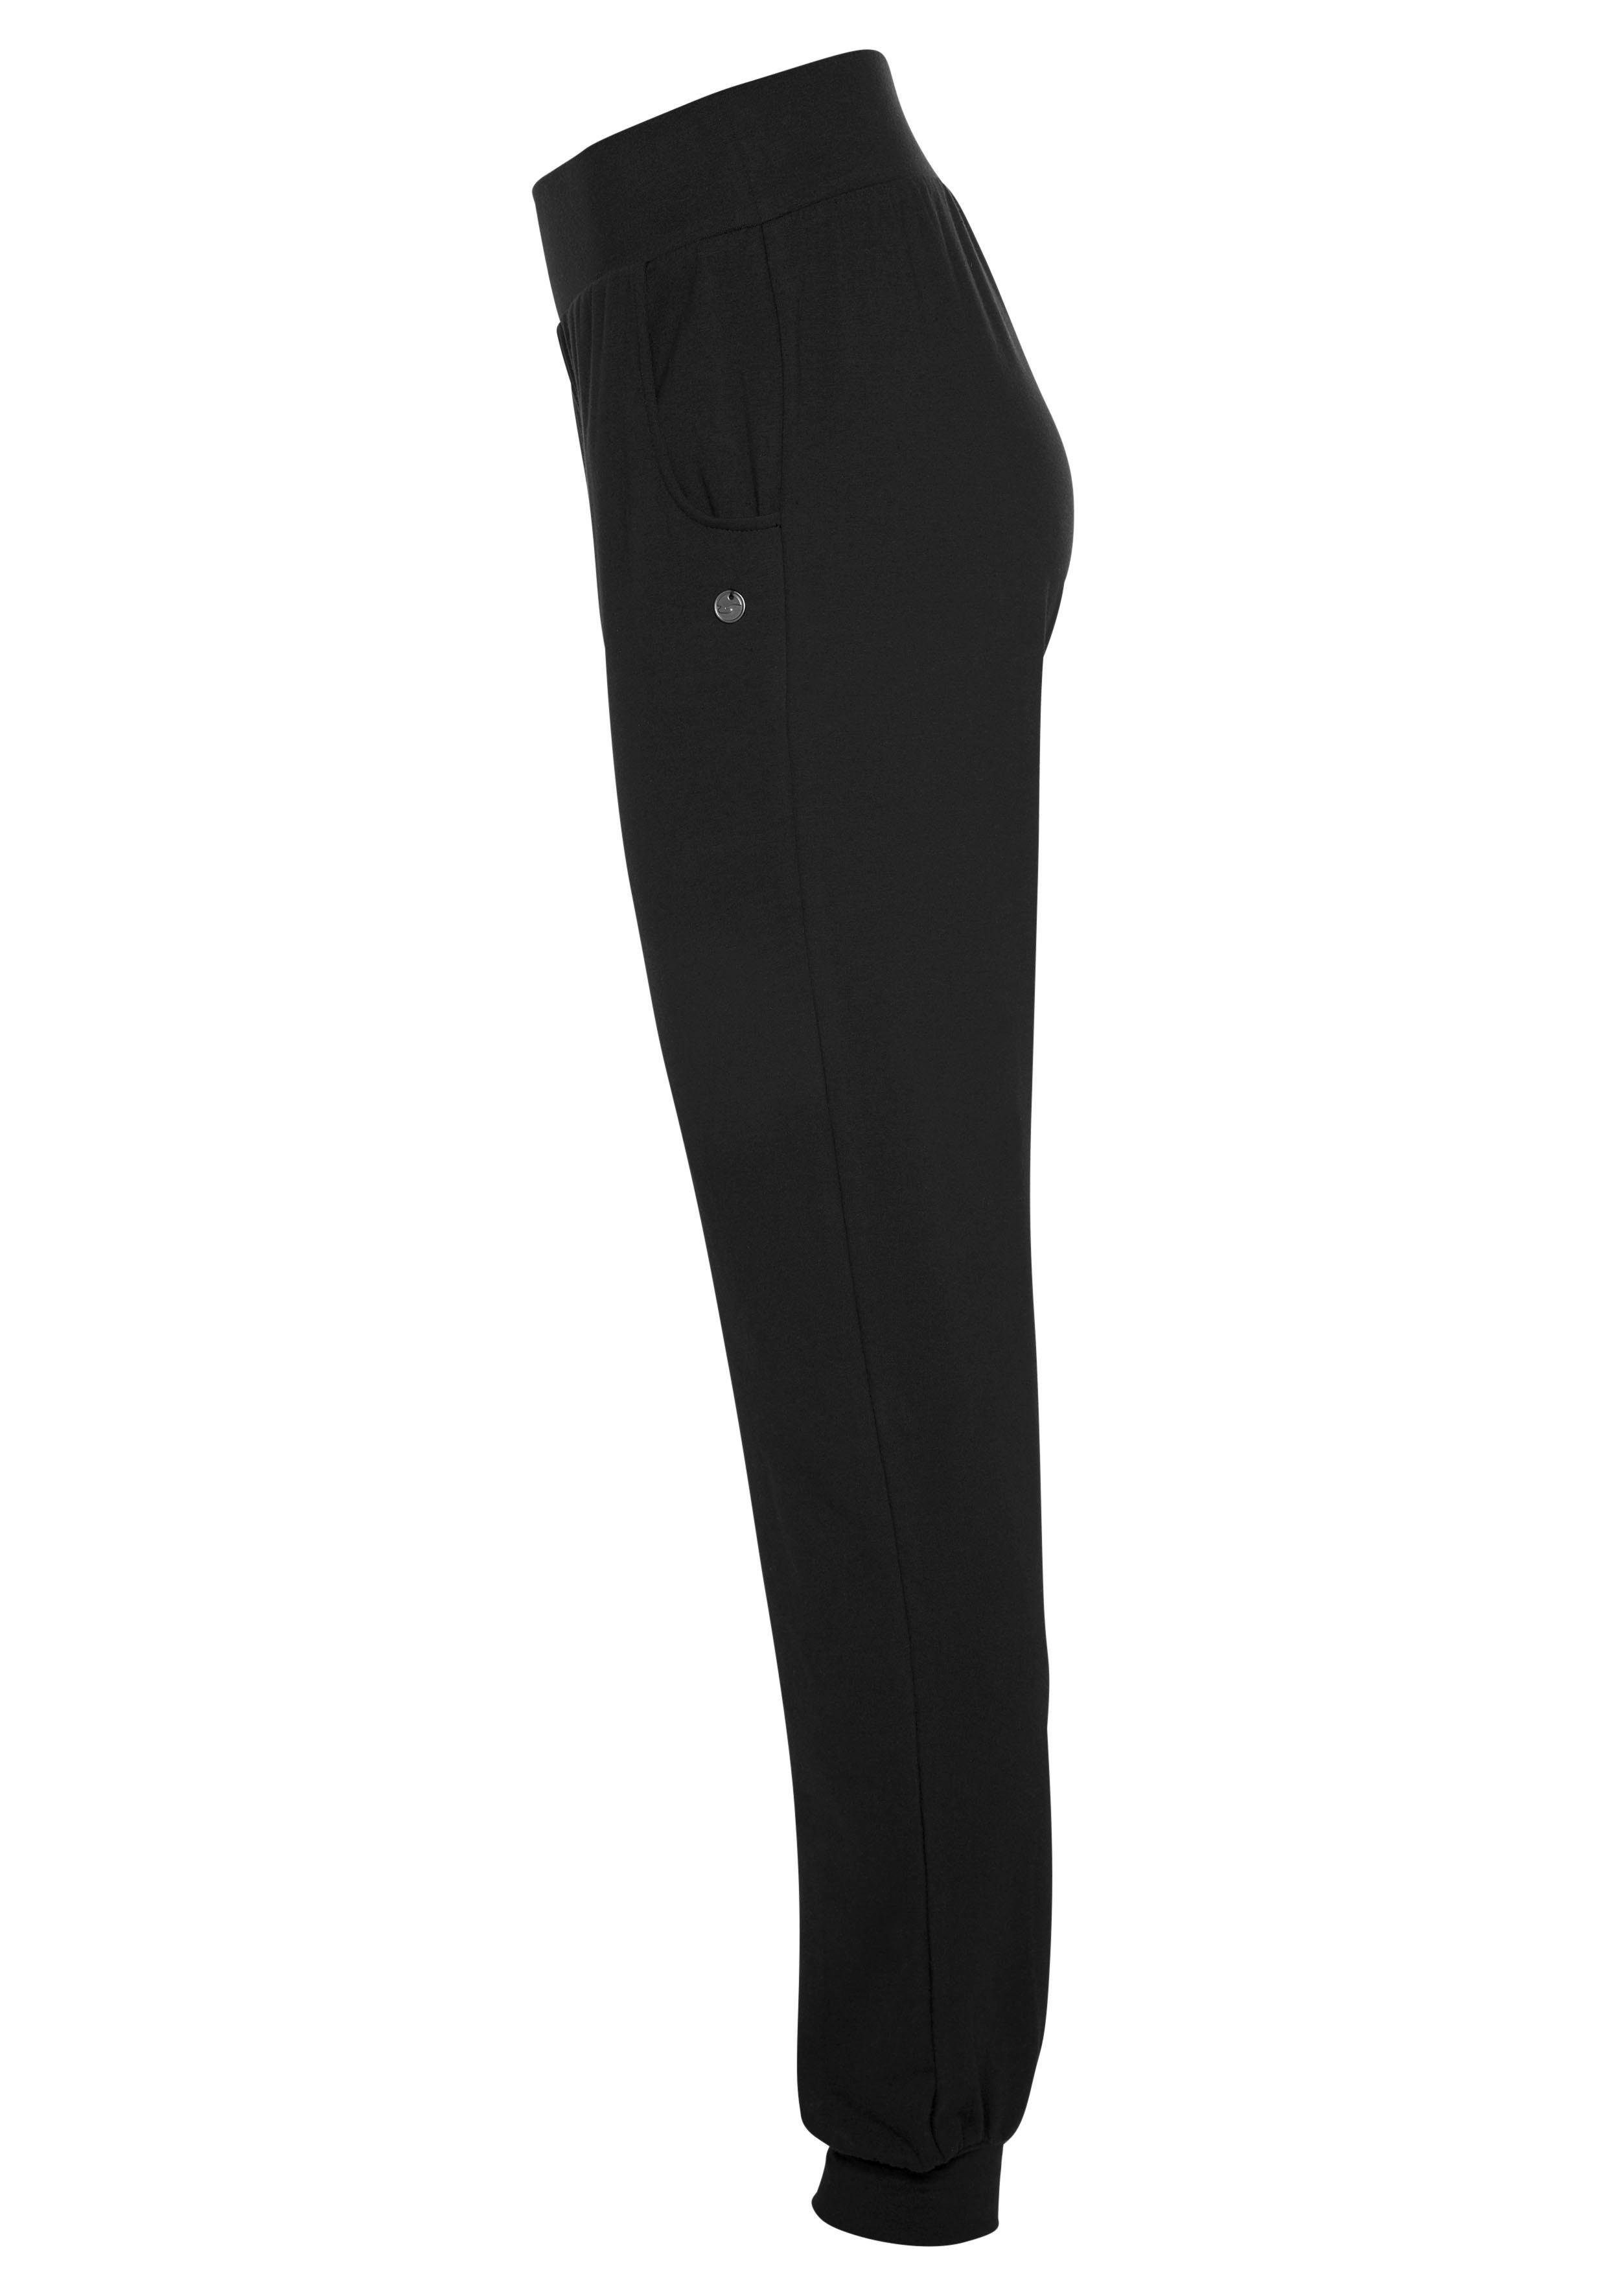 Sportswear Fit Ocean schwarz & - - Relax Loose Yoga Yogahose Soulwear Pants